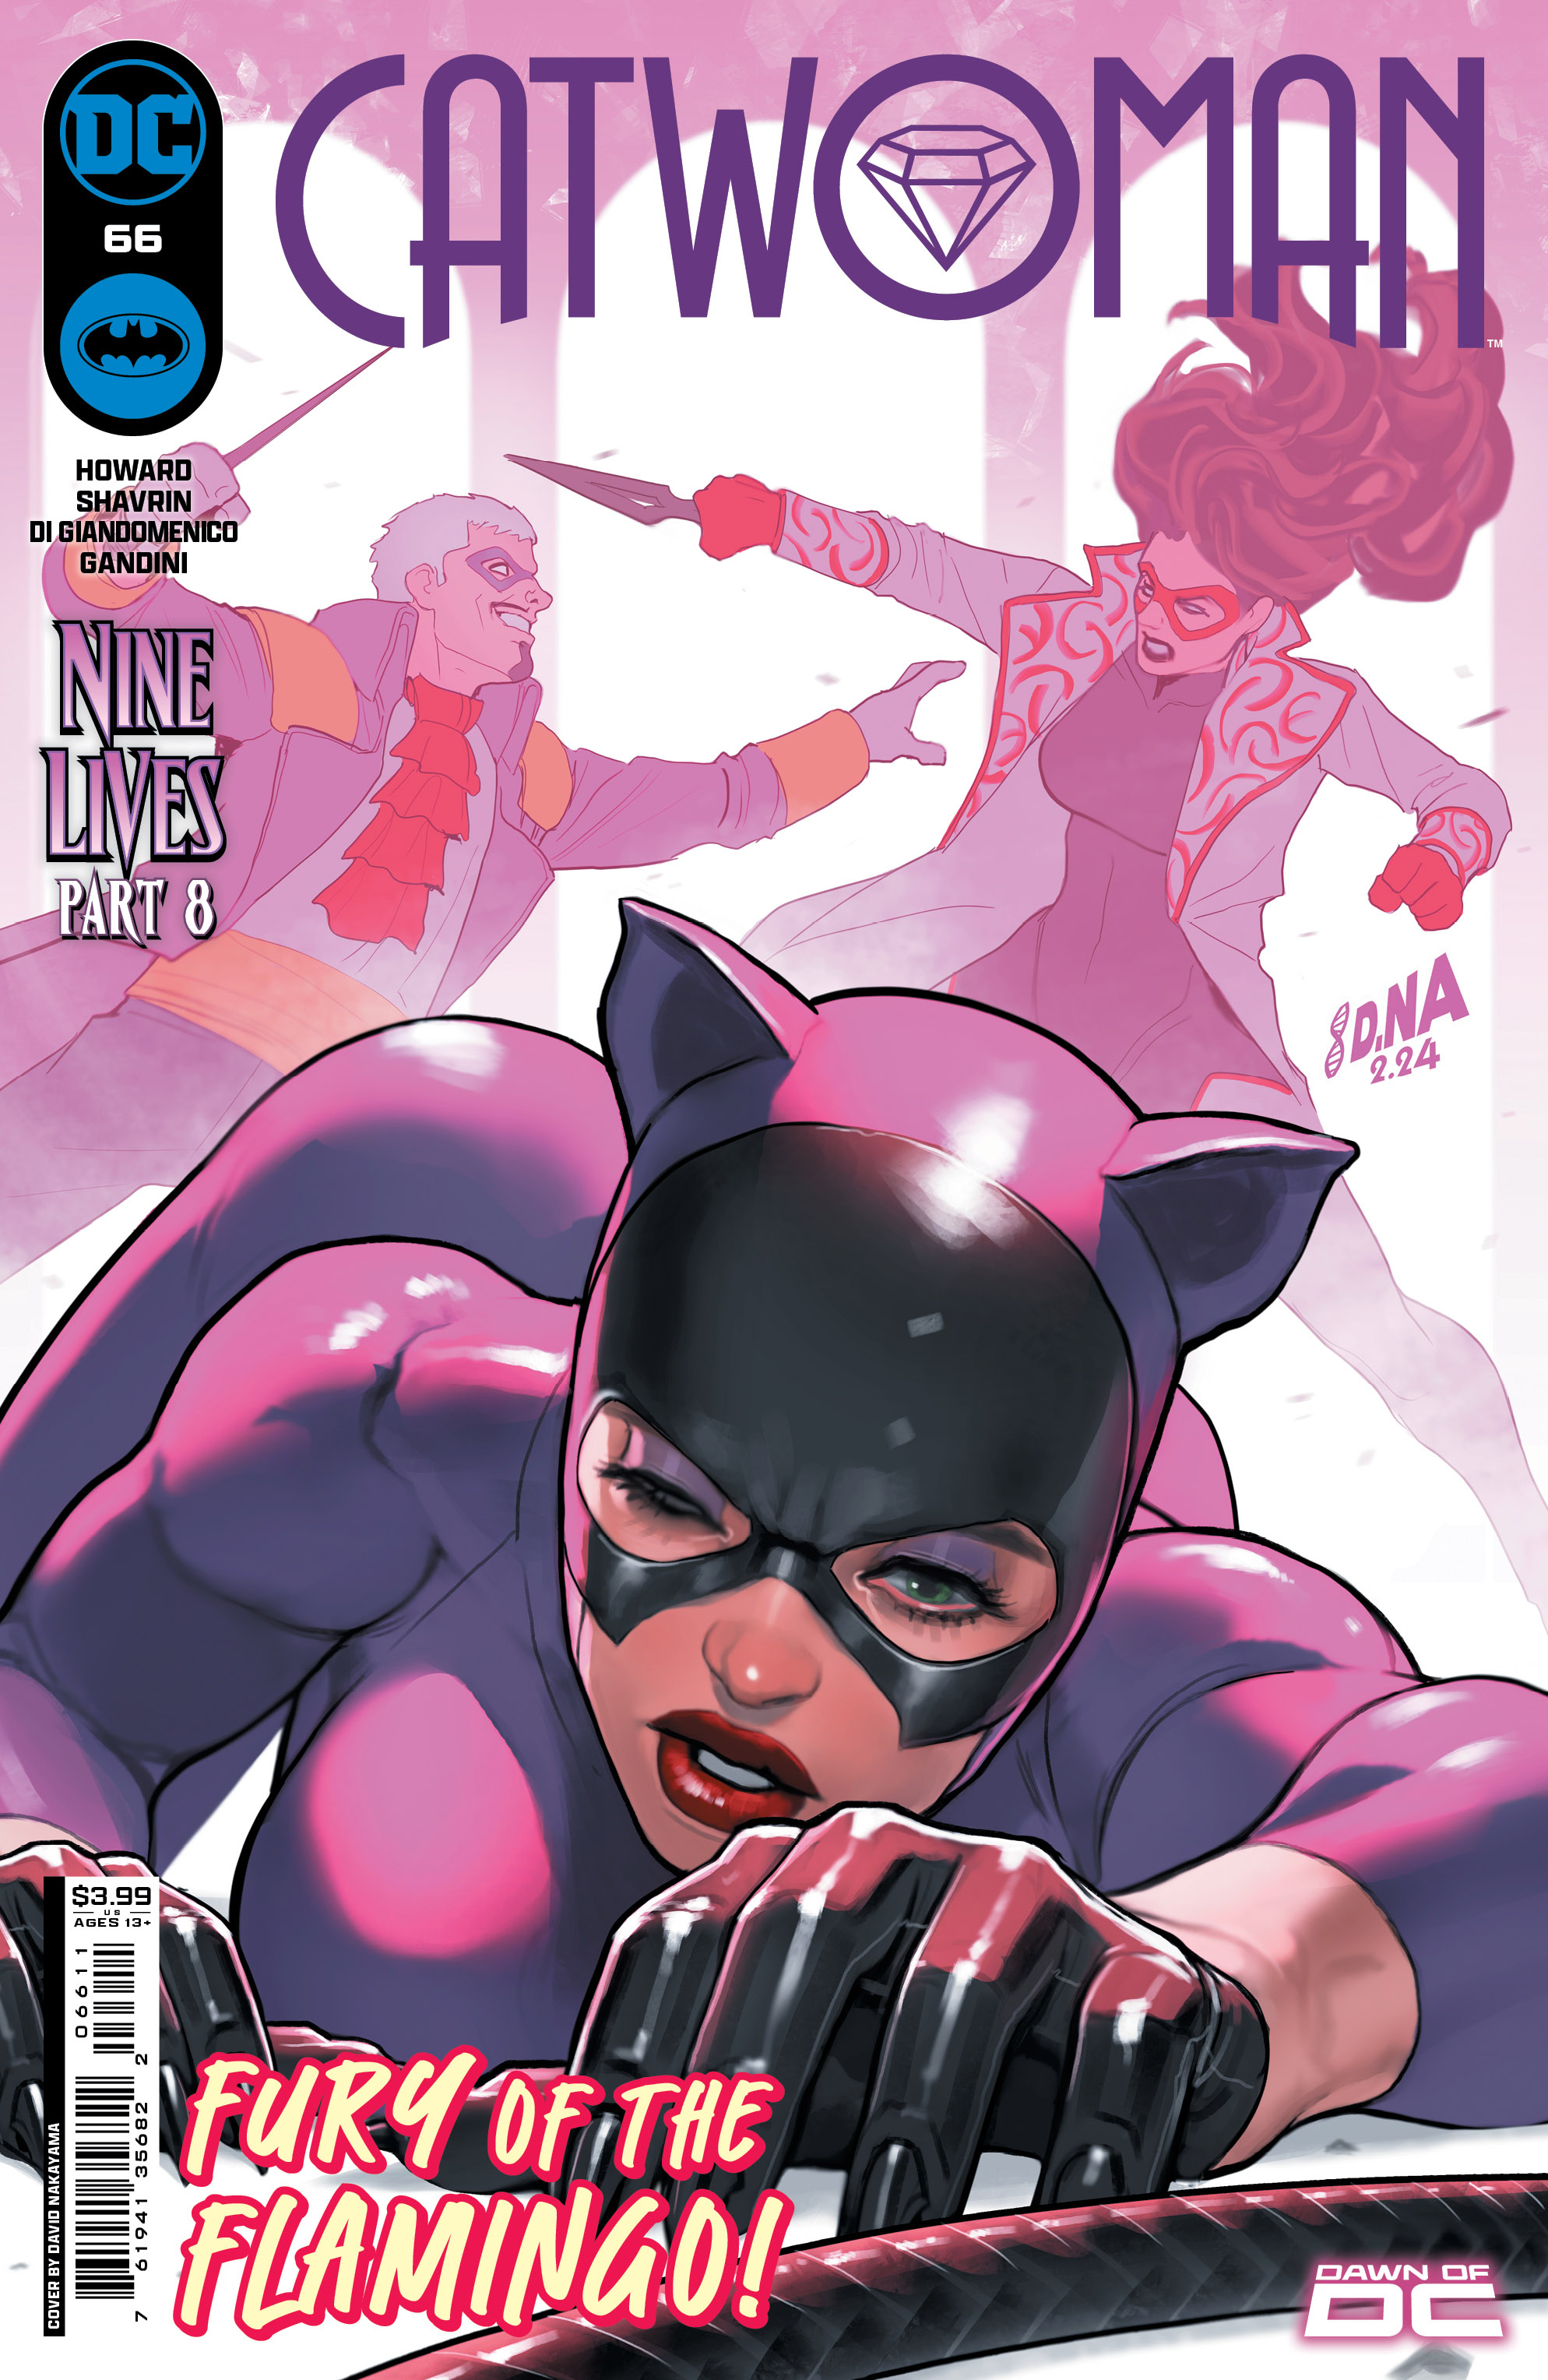 Catwoman #66 Cover A David Nakayama